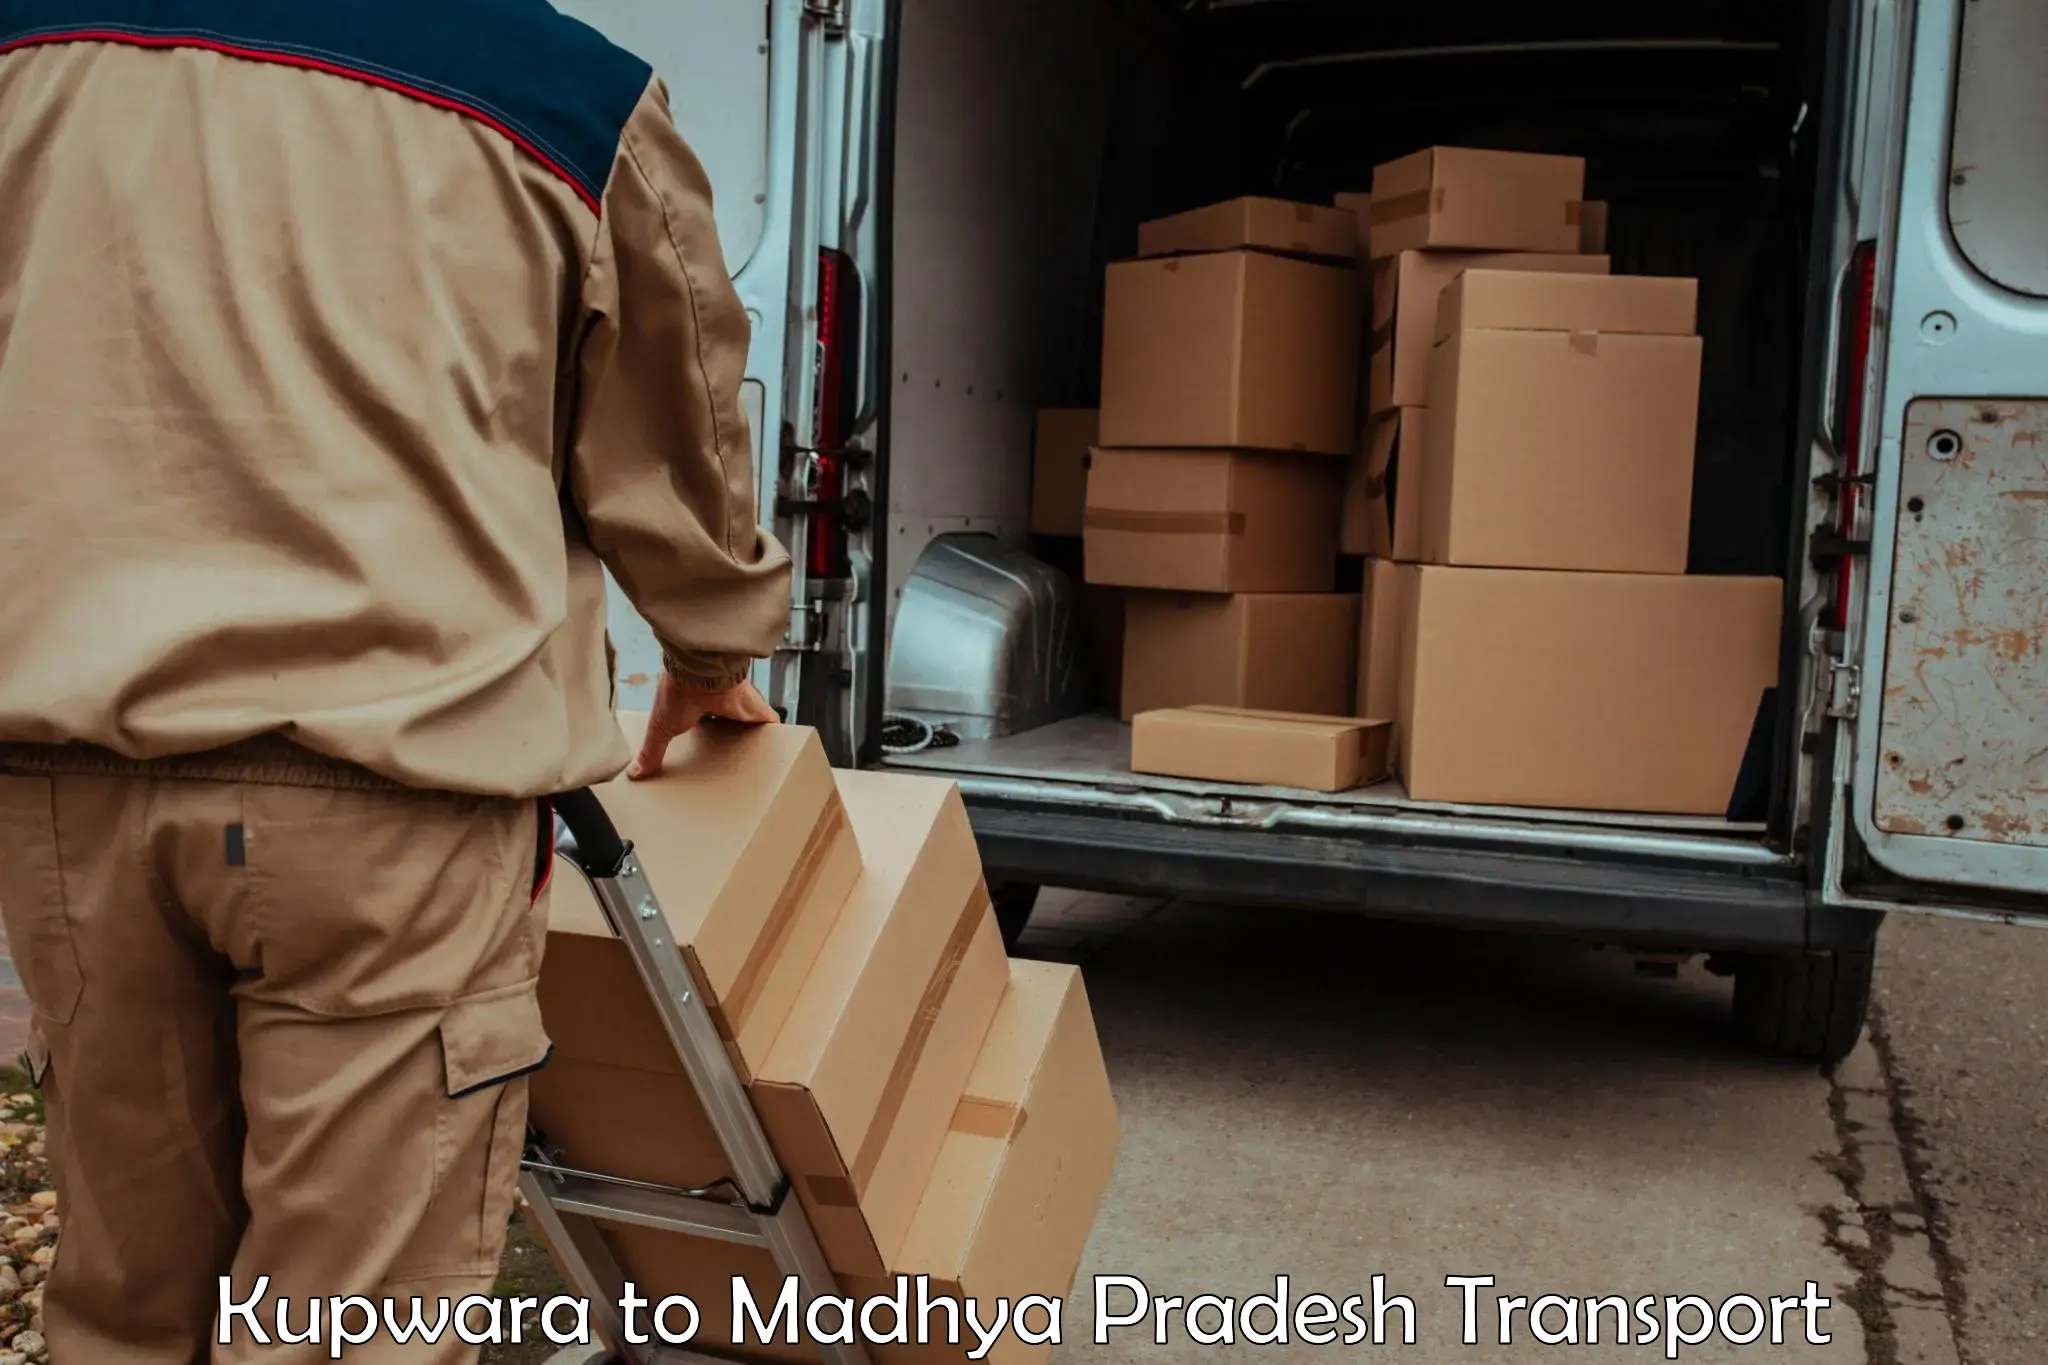 Lorry transport service Kupwara to Garoth